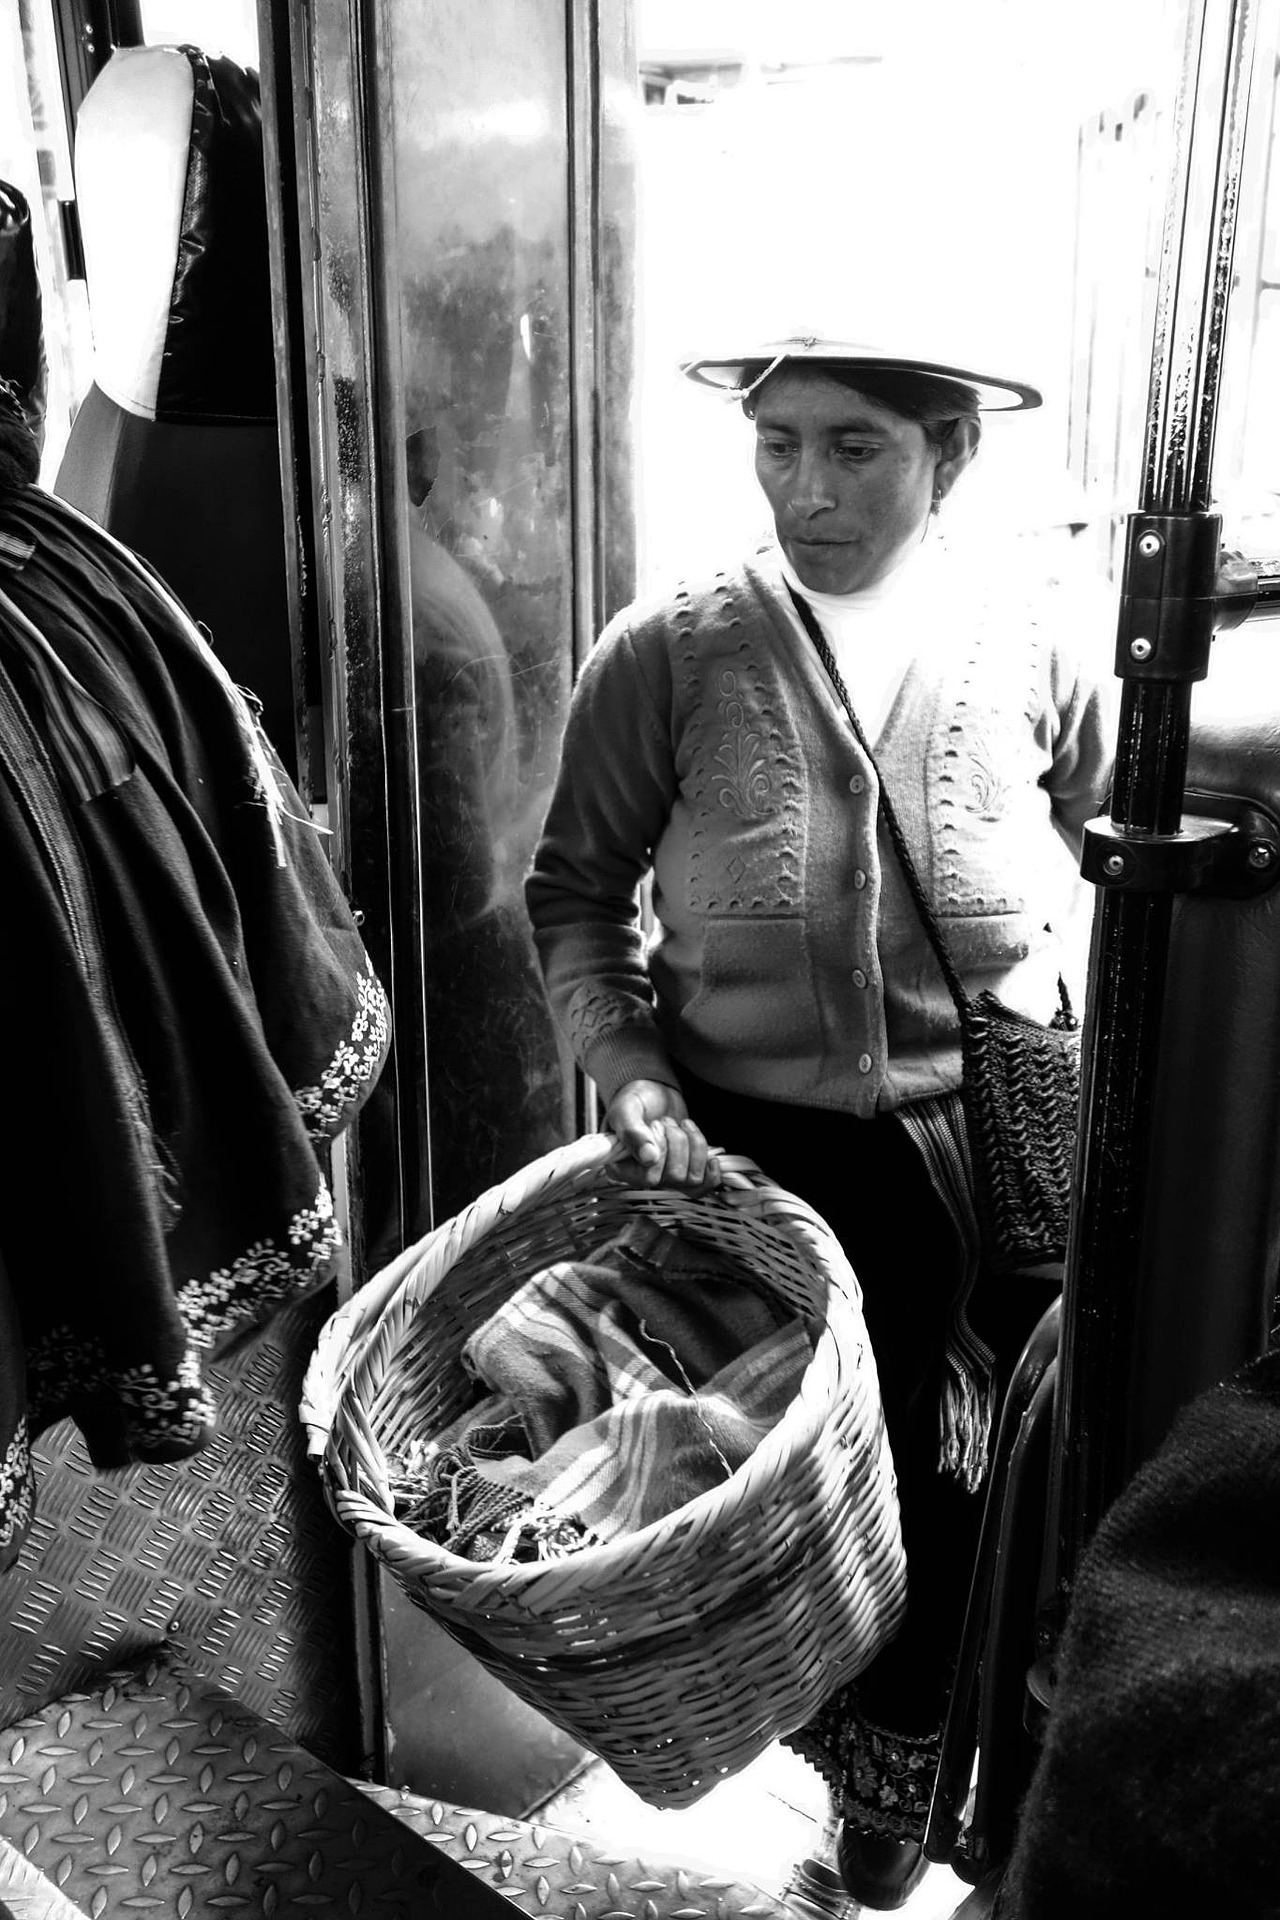 Eine schwarz-weiß Fotografie einer indianischen Frau aus Südamerika, die einen Hut und ein Kleid trägt und eine Strickweste darüber an hat. Sie geht in ein Geschäft mit einem Weidenkorb, der mit Wäsche gefüllt ist.